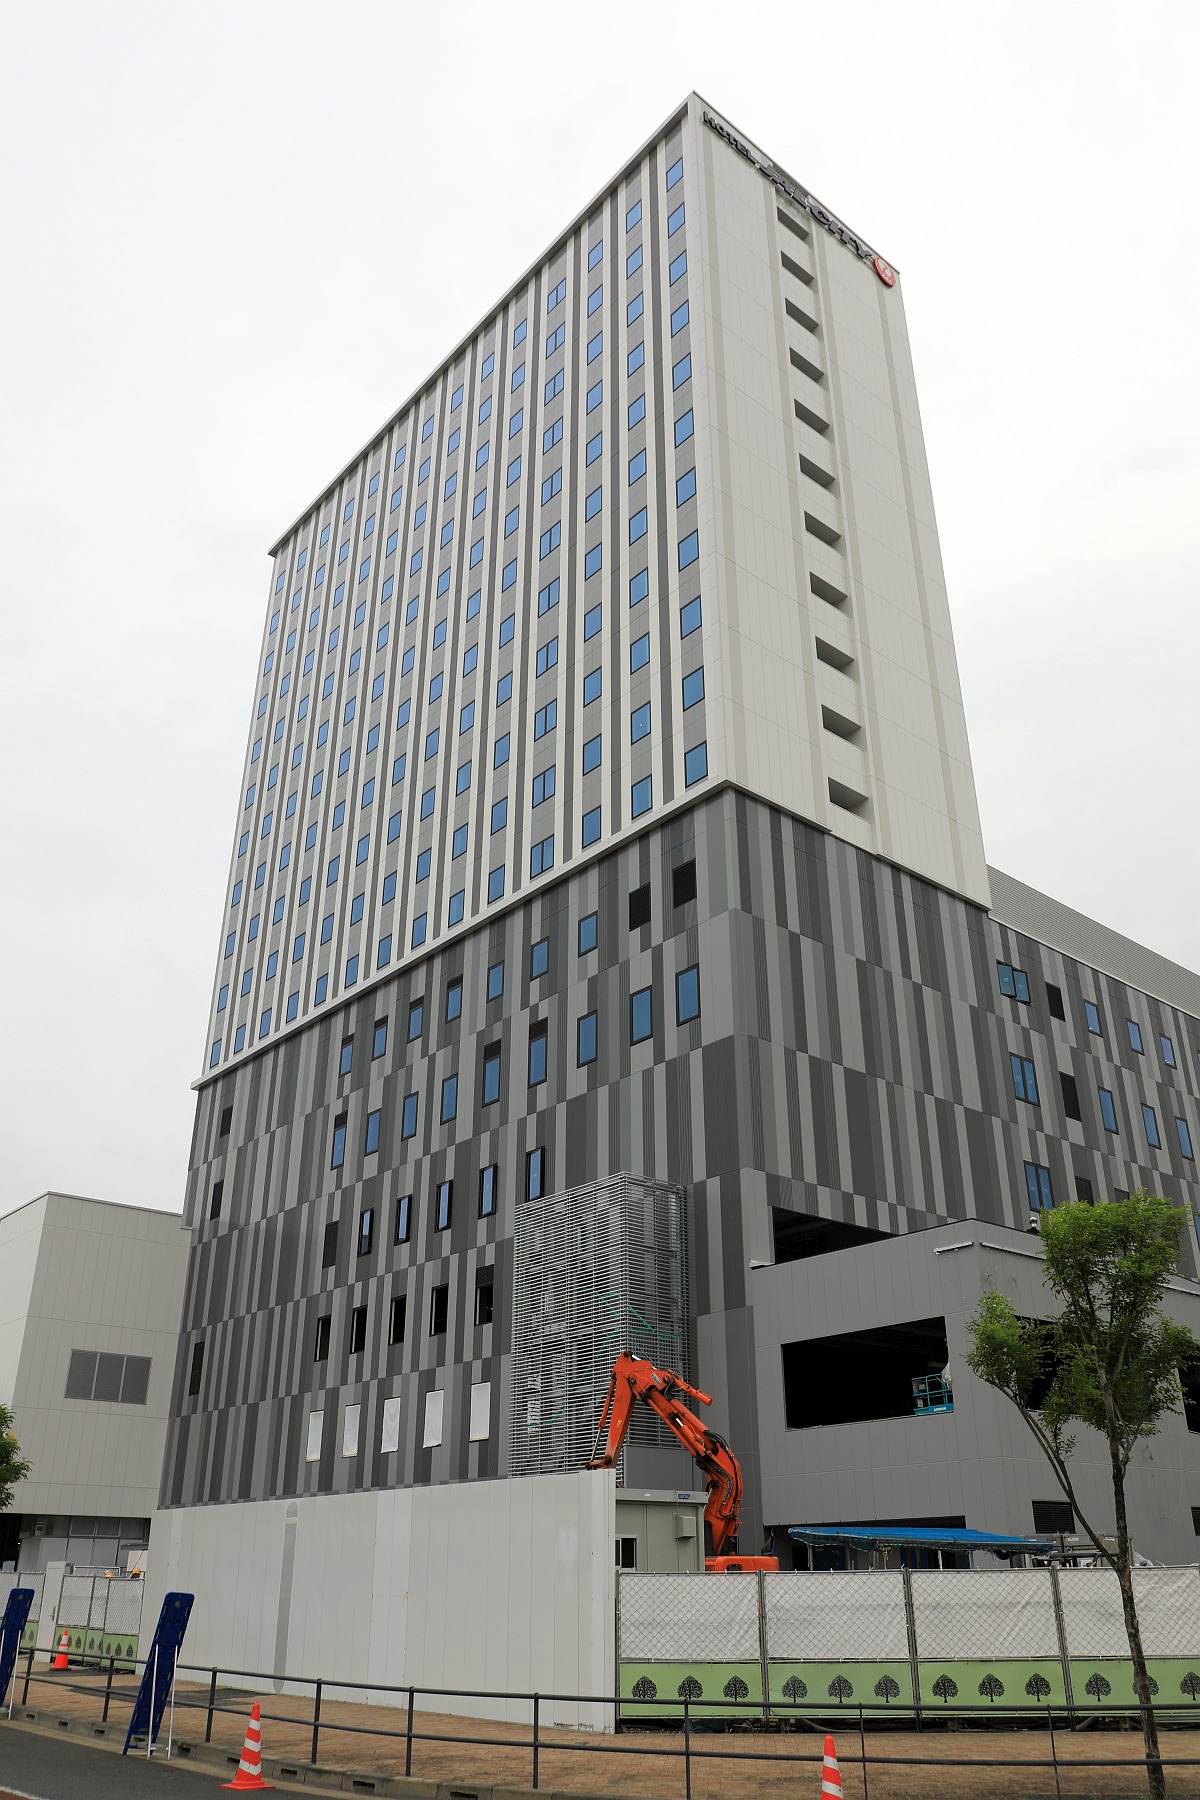 地上17階 ホテルjalシティ東京 豊洲 の建設状況 19 7 13 超高層マンション 超高層ビル